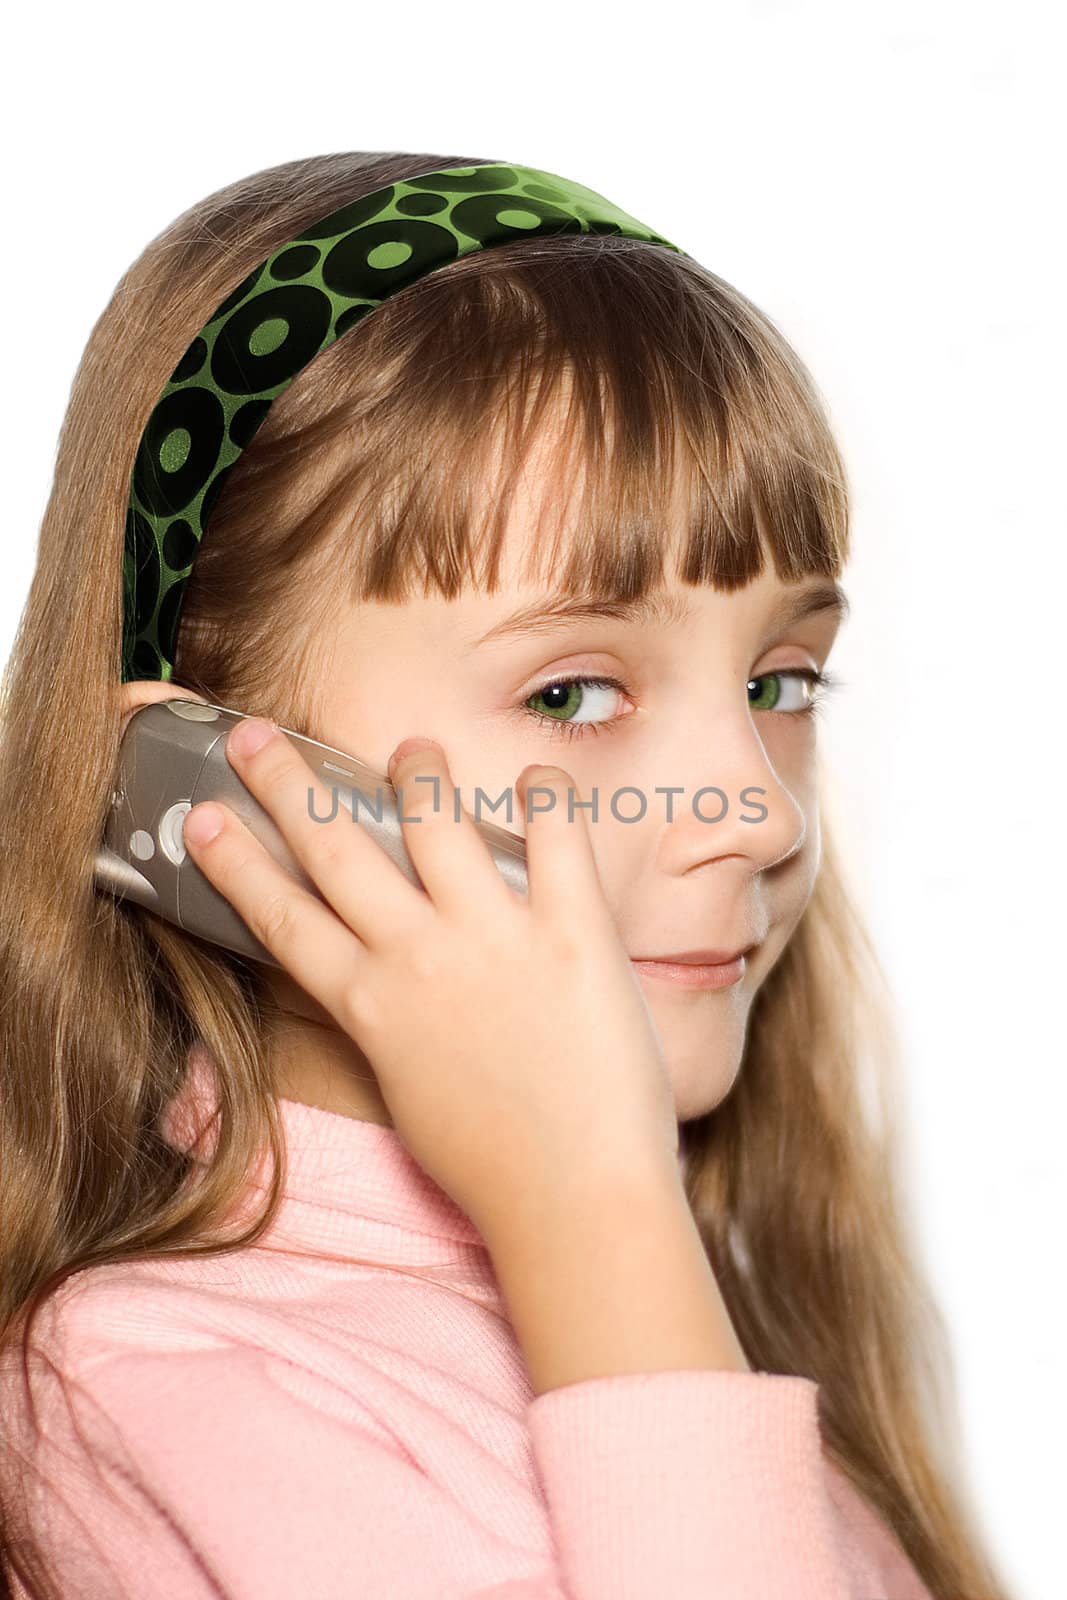 The girl talks on a cellular telephone
